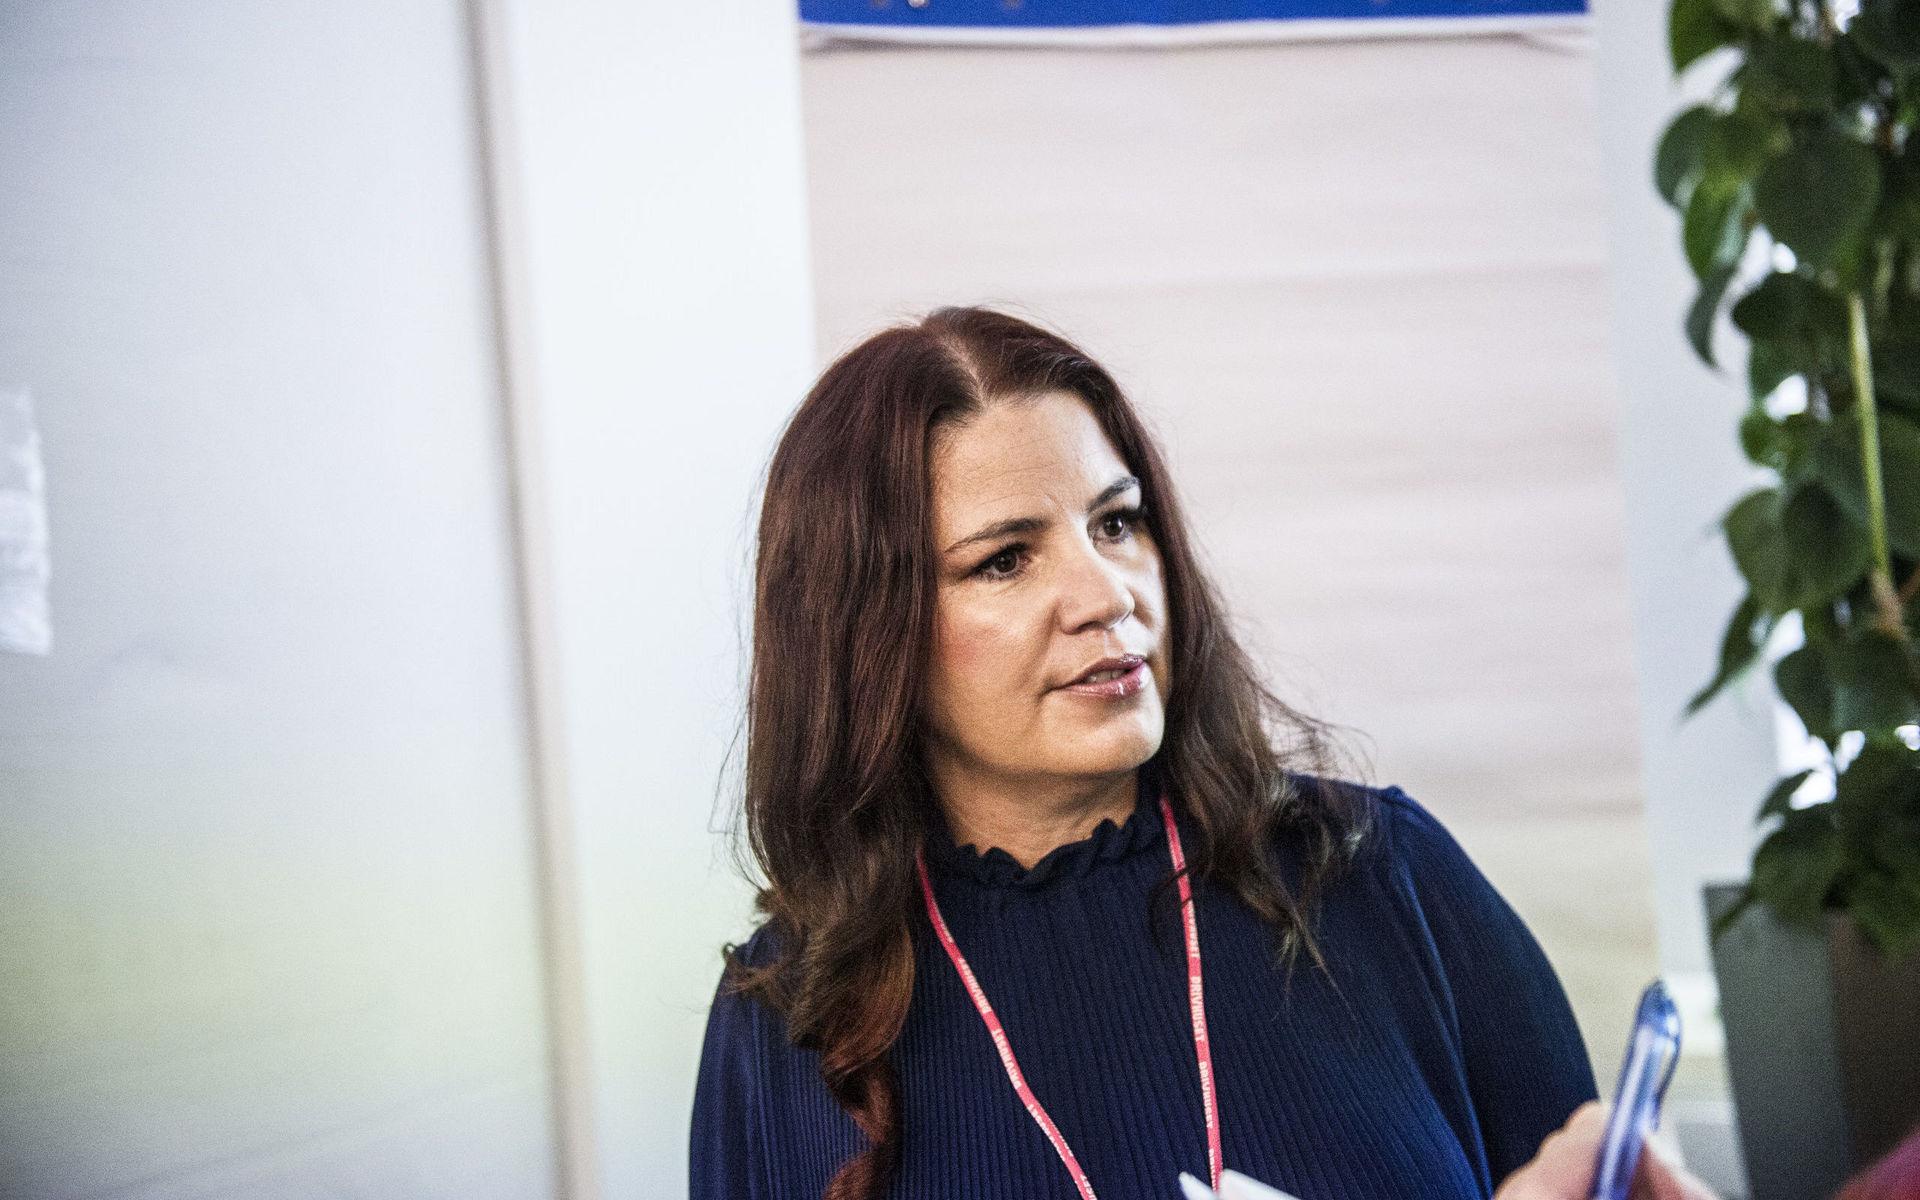 Det kvinnliga företagandet har gått ner på senare år. Det vill Drivhuset och Yesbox ändra på, säger Maria ben Salem Dynehäll.